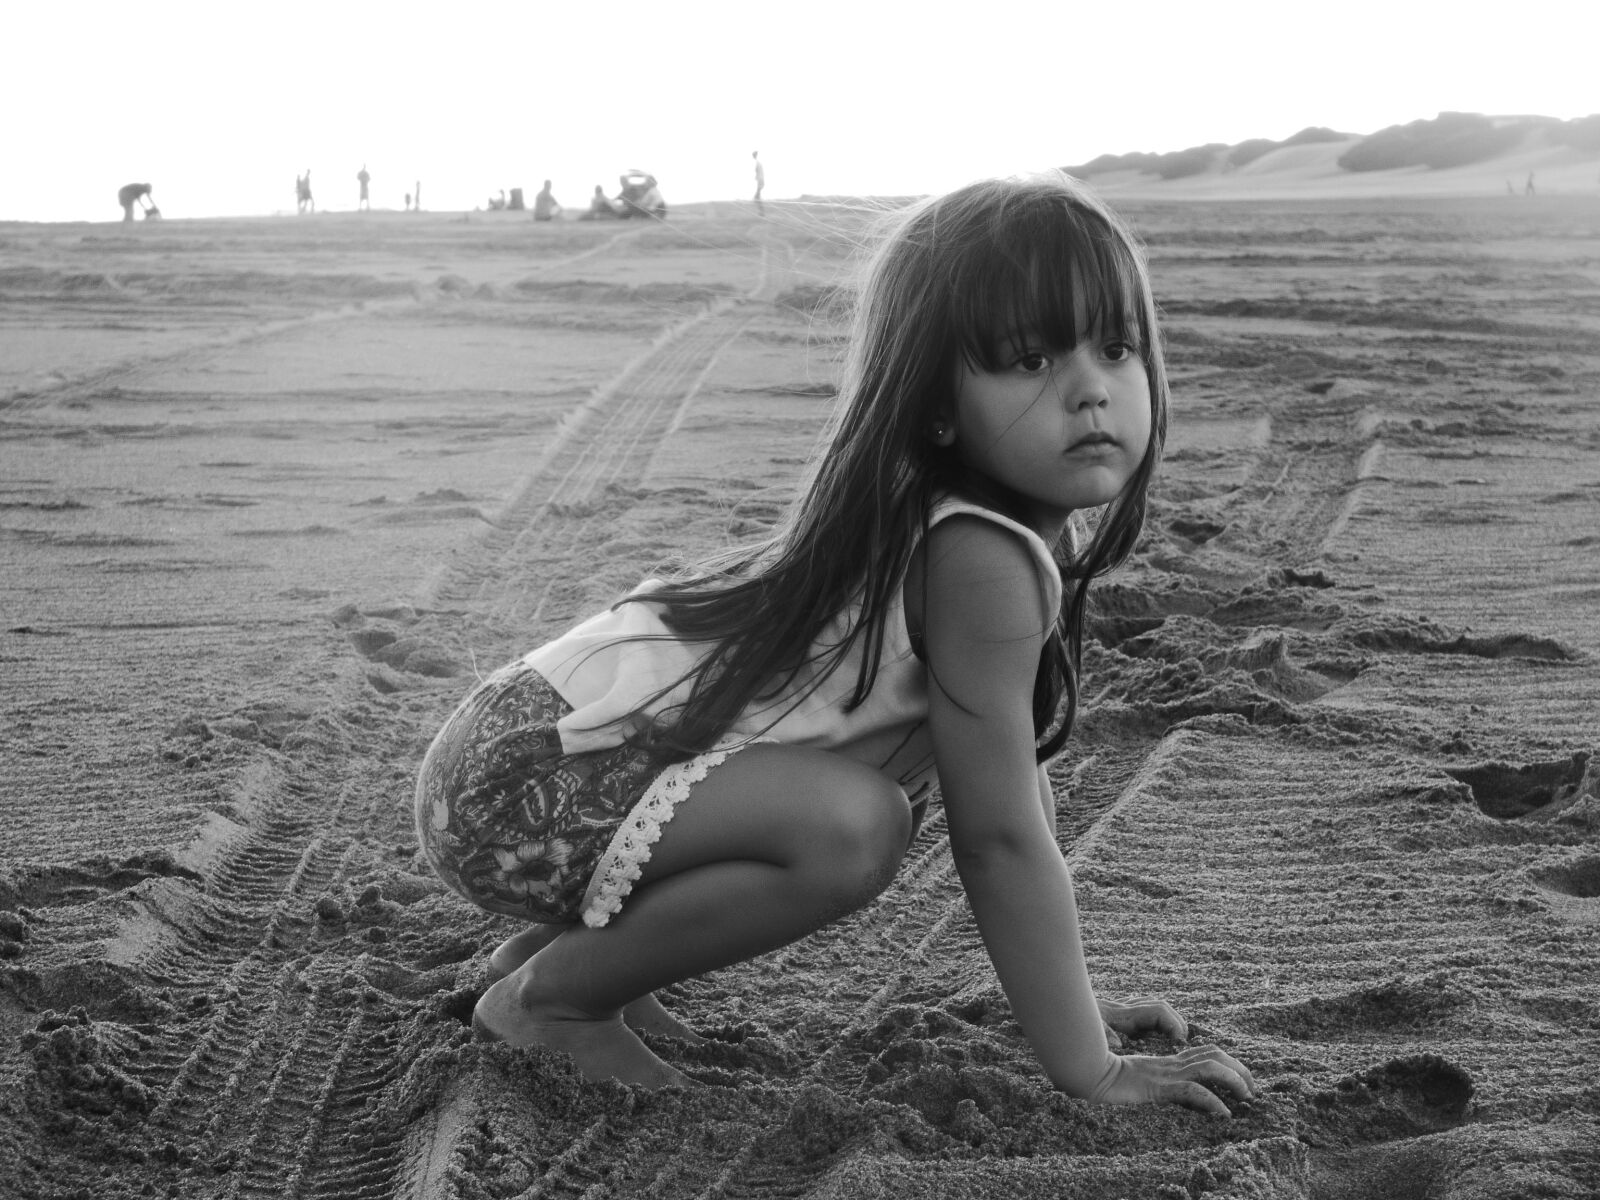 Panasonic Lumix DMC-FZ70 sample photo. Beach, child, daughter, dream photography